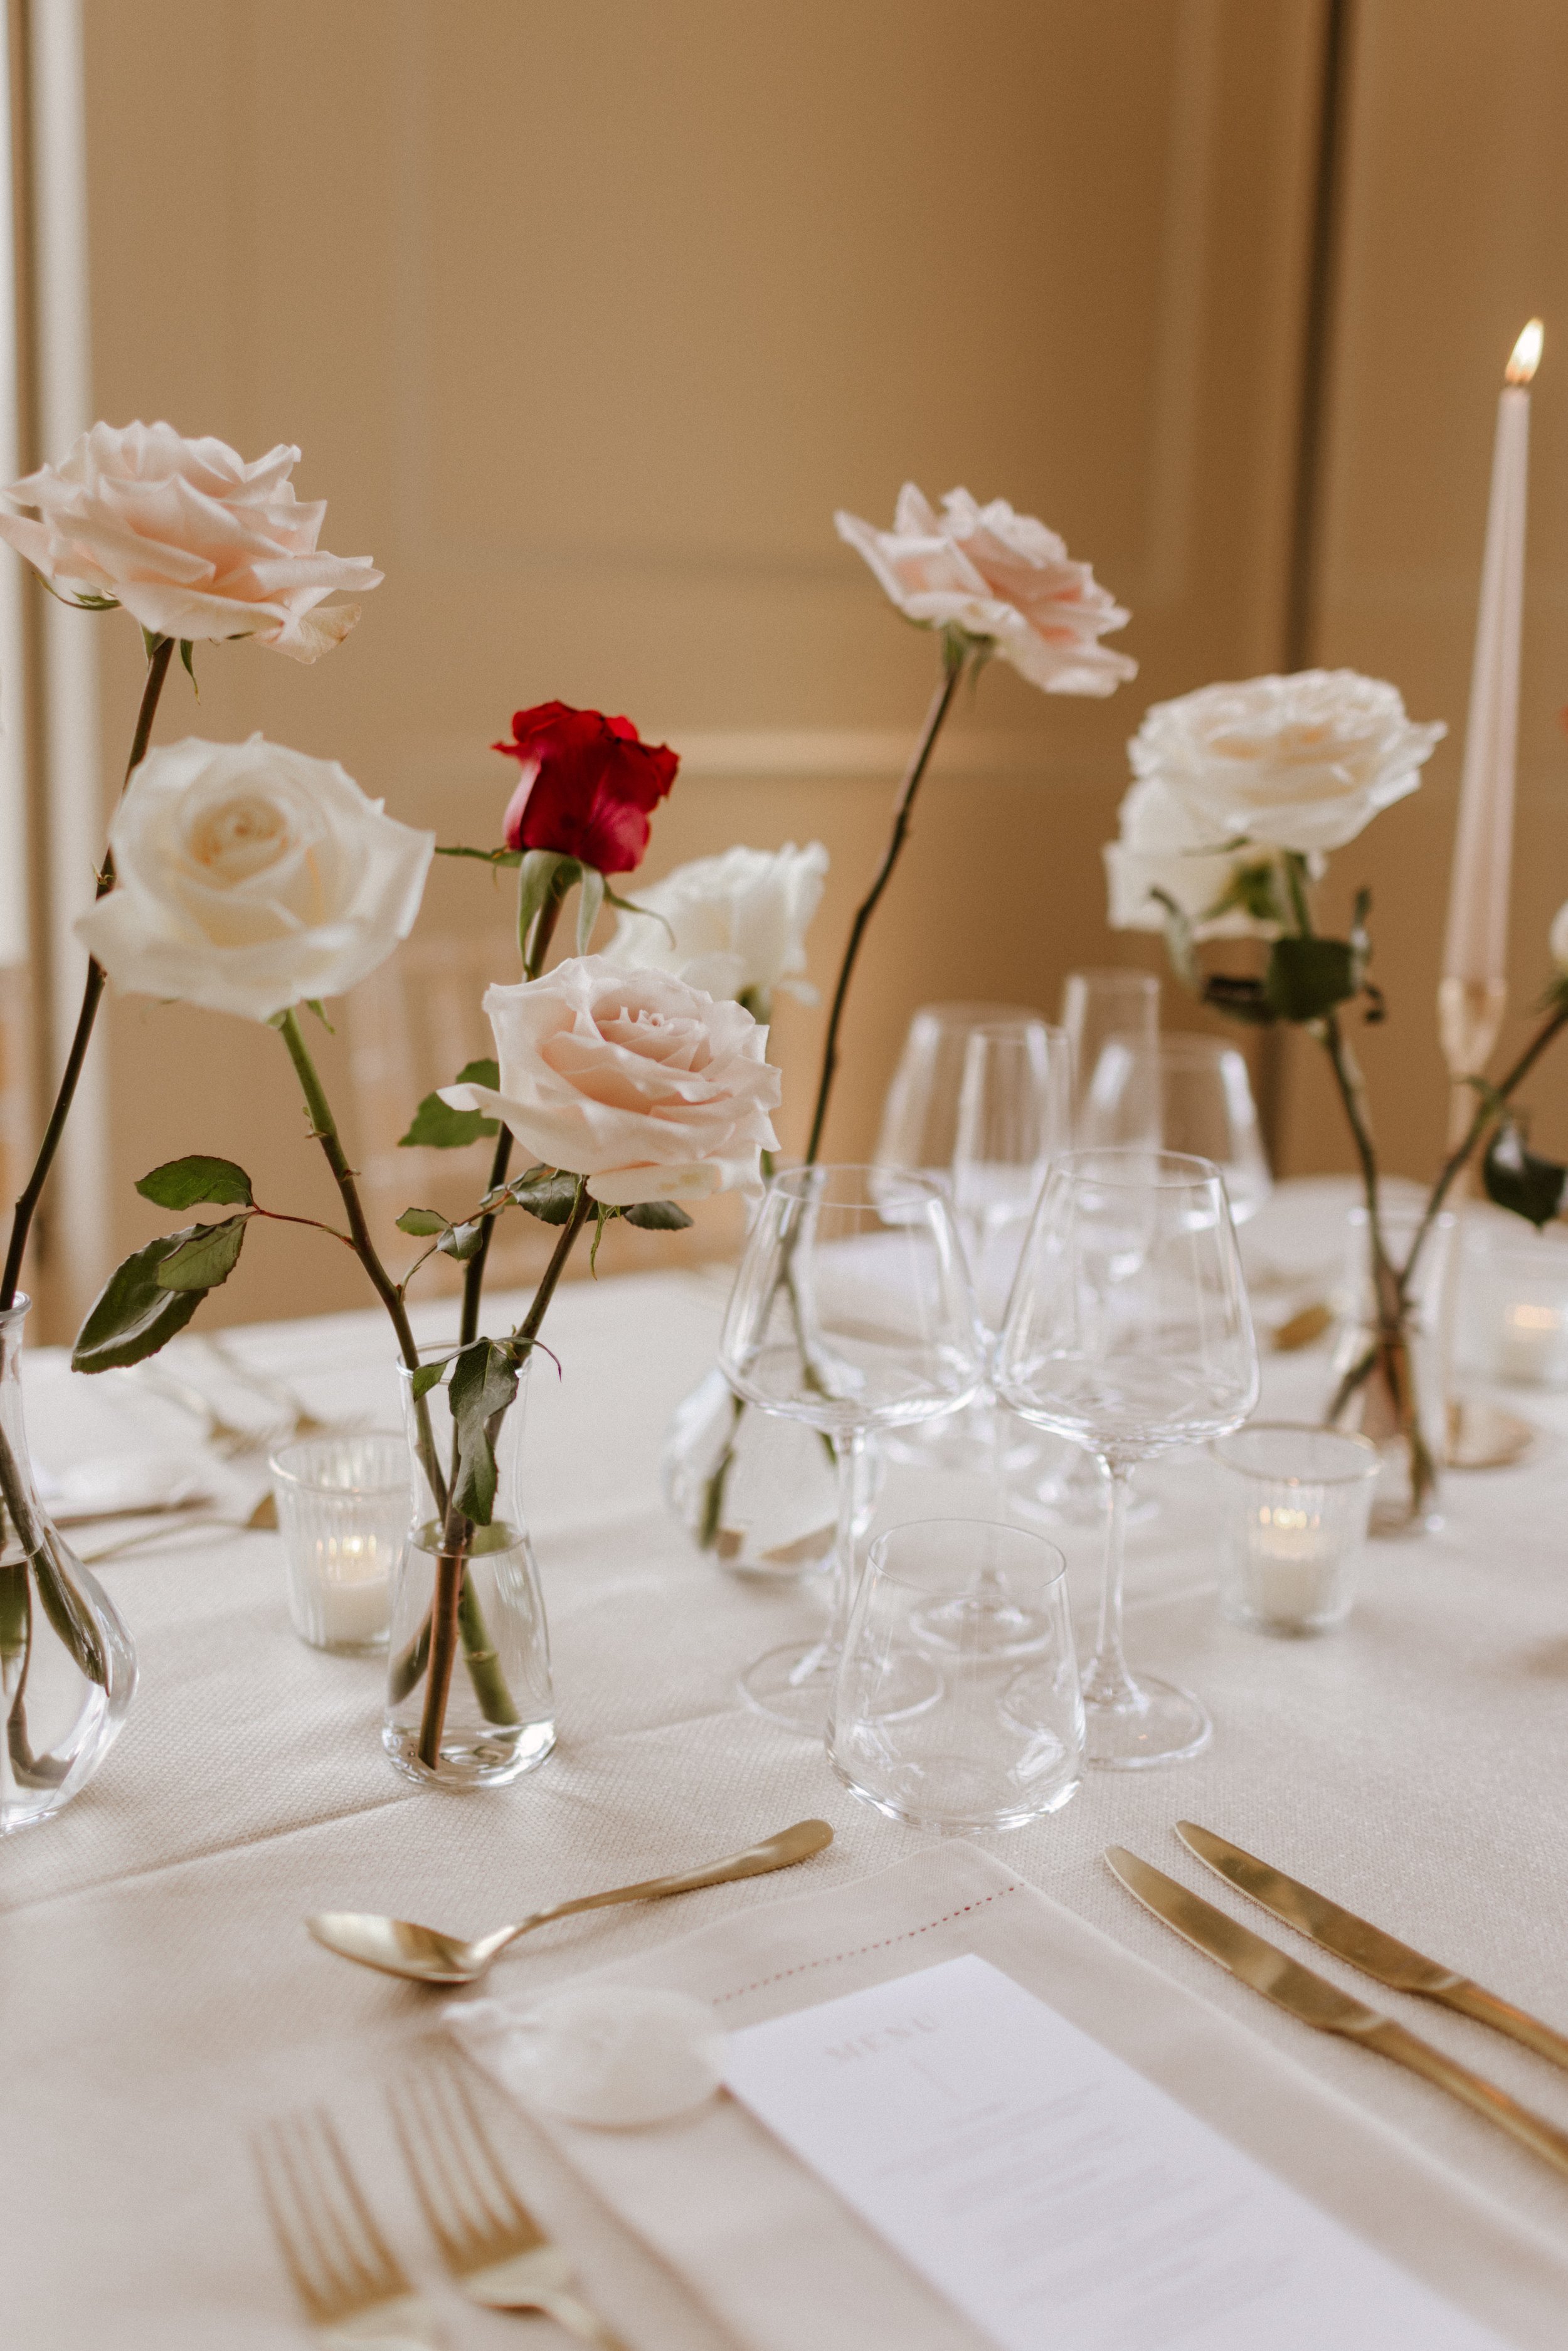 Modern contemporary wedding table decor long stemmed roses bud vases .jpg